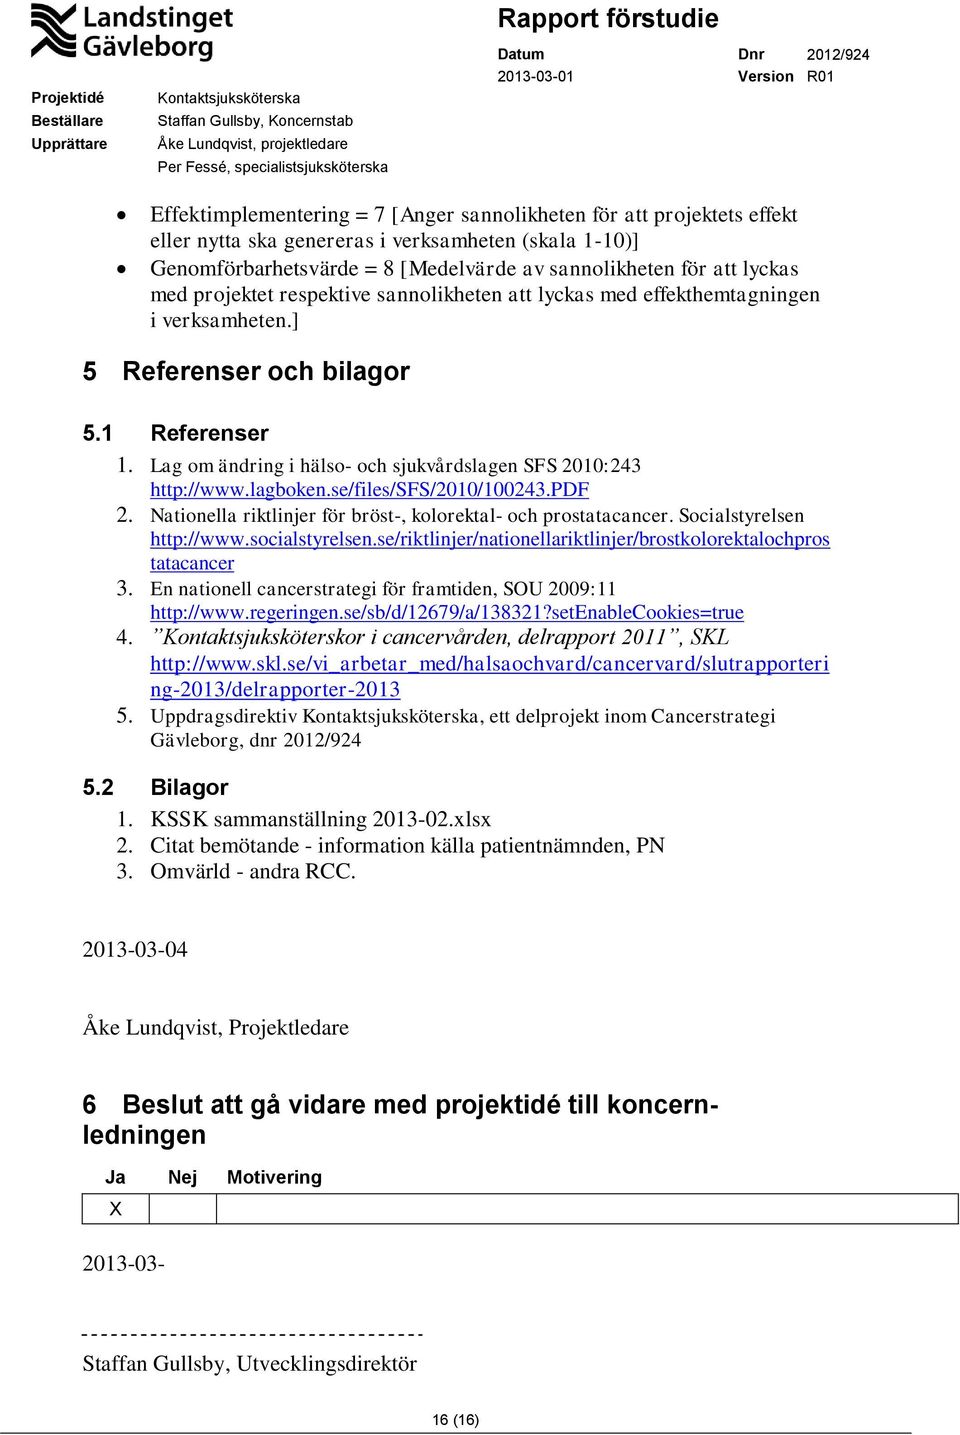 lagboken.se/files/sfs/2010/100243.pdf 2. Nationella riktlinjer för bröst-, kolorektal- och prostatacancer. Socialstyrelsen http://www.socialstyrelsen.